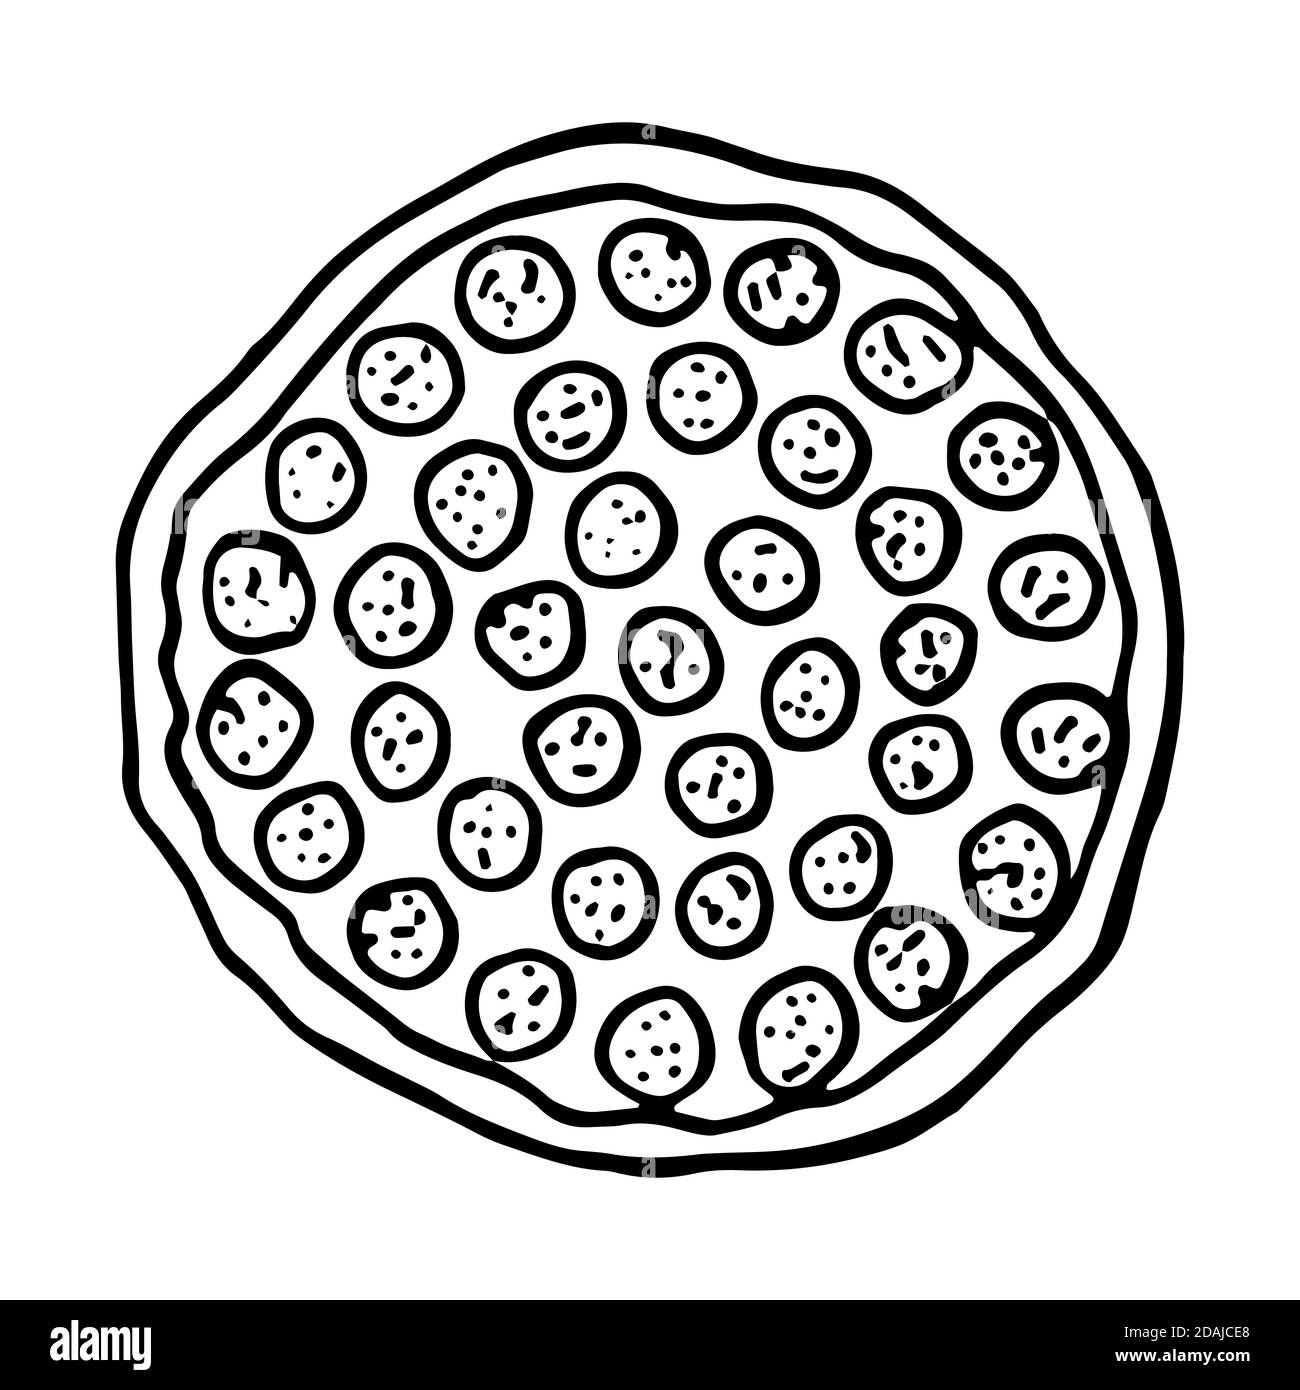 Pizza cucina italiana tradizionale. Stile di schizzo disegnato a mano. Illustrazione vettoriale isolata su sfondo bianco per il menu ristorante e il design del pacchetto, post Illustrazione Vettoriale